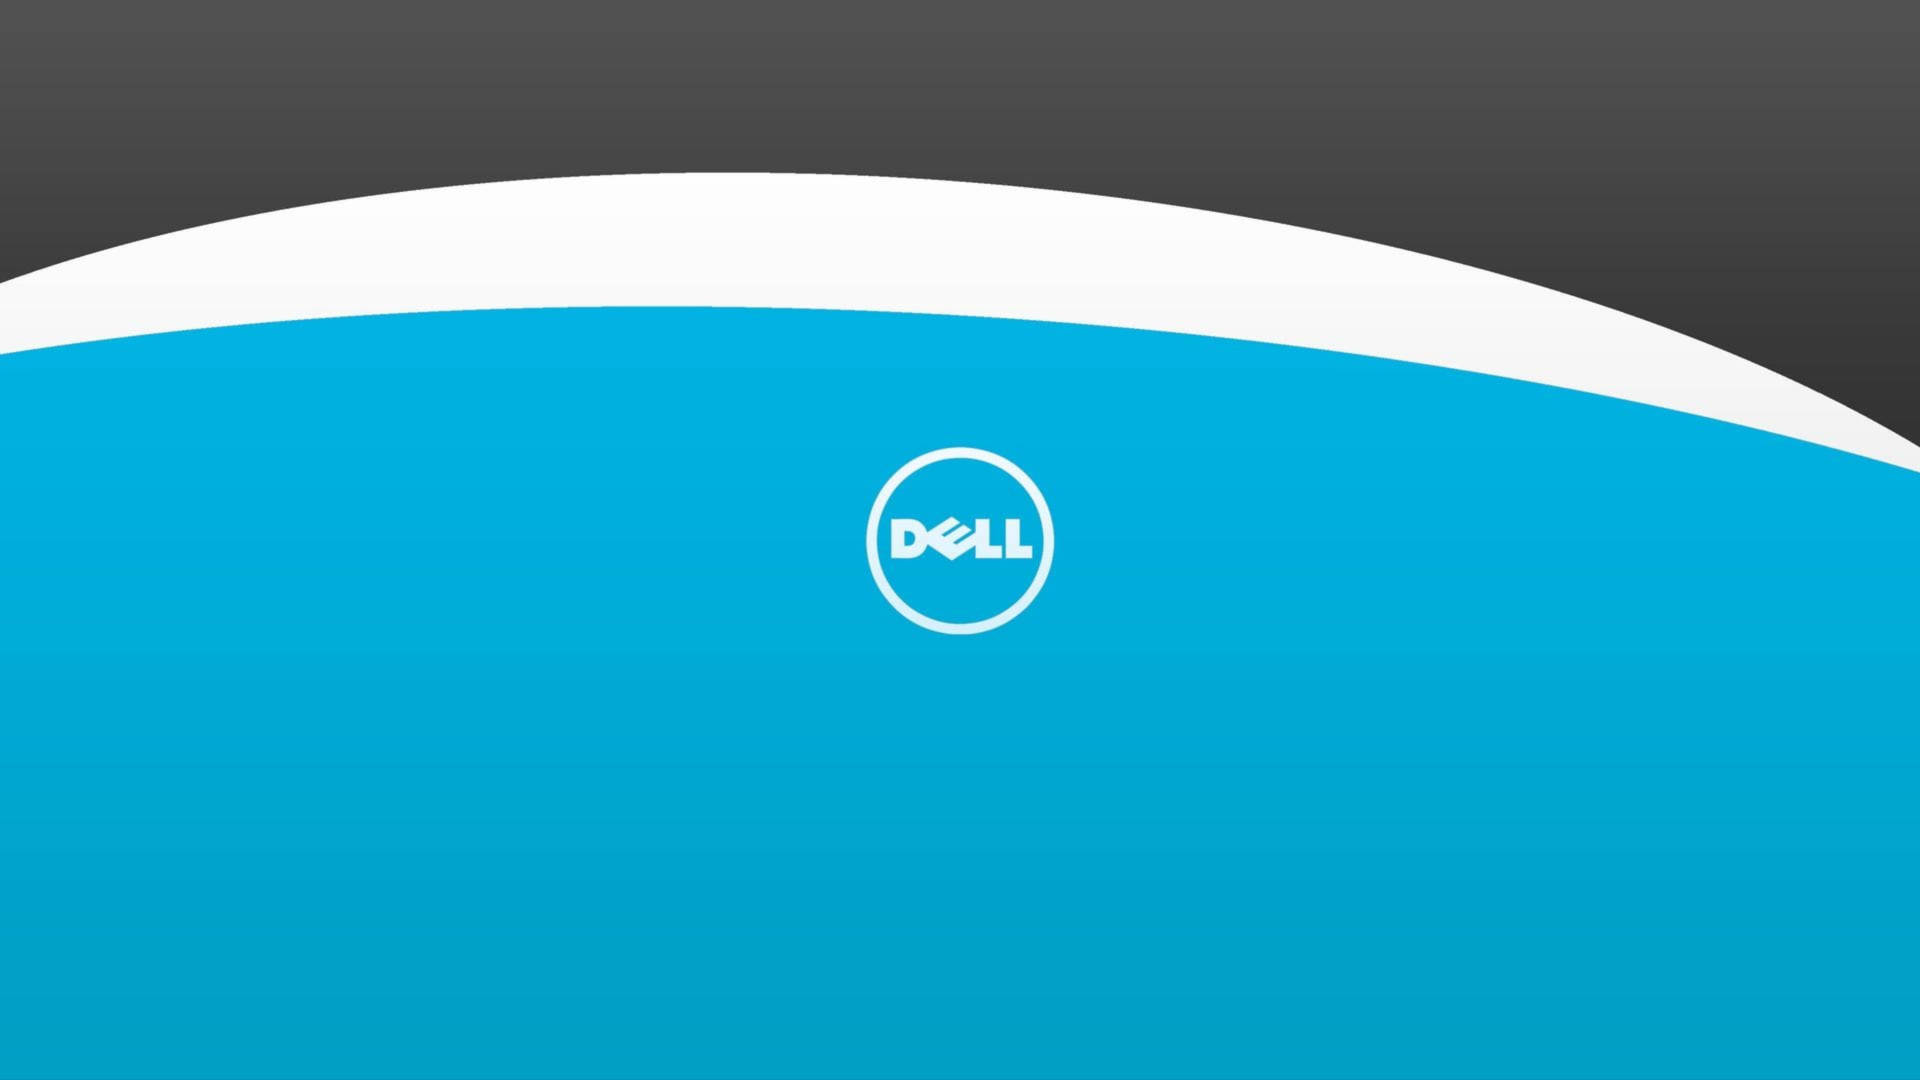 Dell 4k Logo On Blue Wallpaper